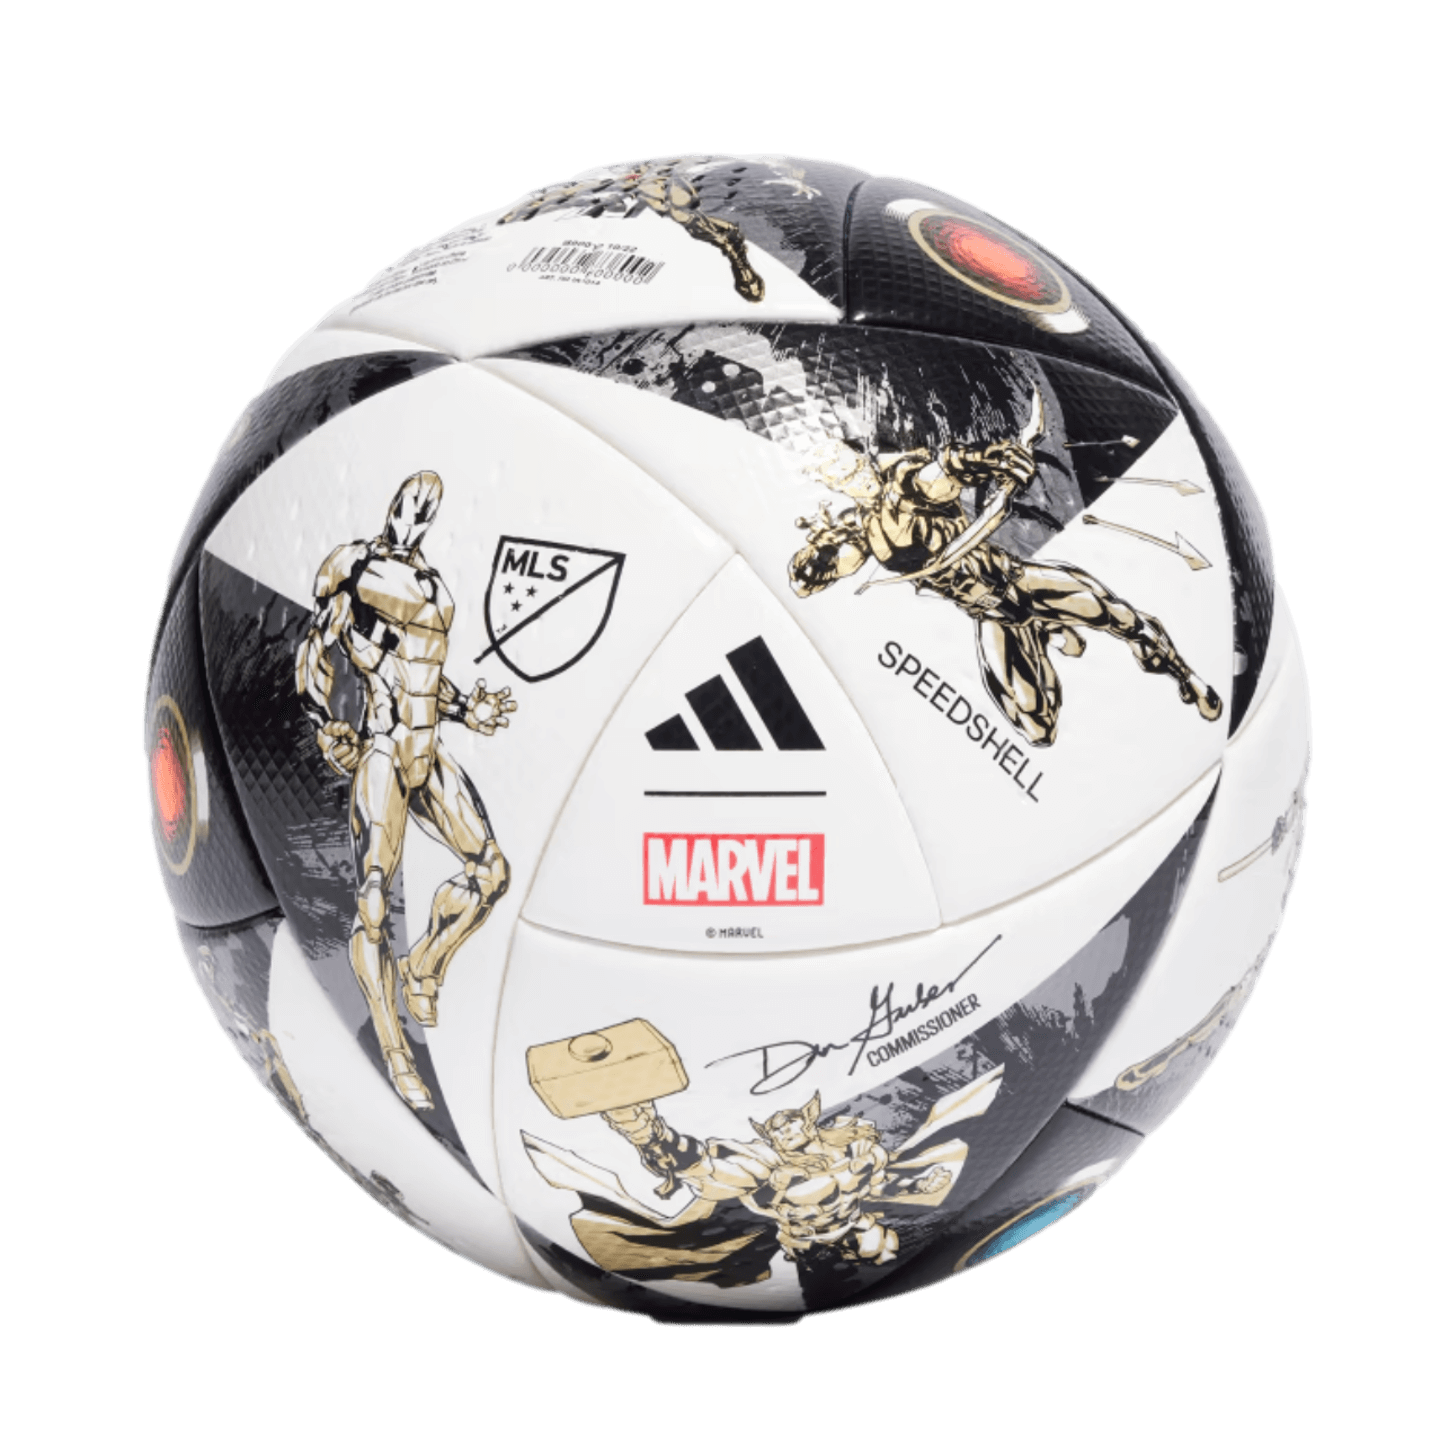 Balón de fútbol Adidas MLS Pro All Star Game Match